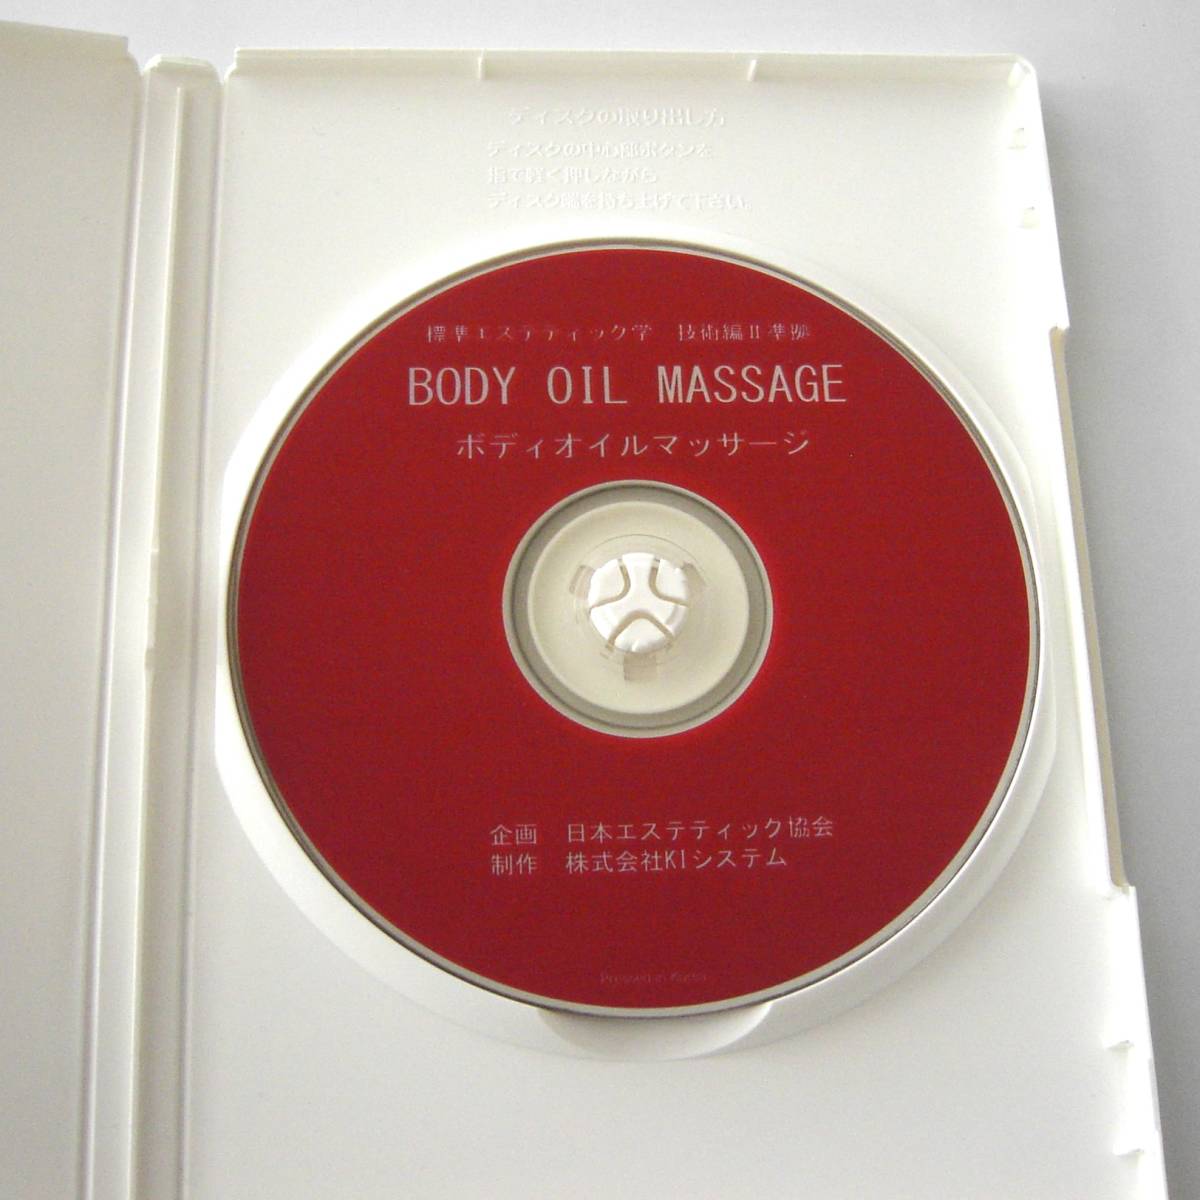 ◆【DVD】『 ボディ オイル マッサージ 』ビデオ BODY OIL MASSAGE 女性モデル 美容 健康 レトロ ビンテージ 「カラー50分」_画像1